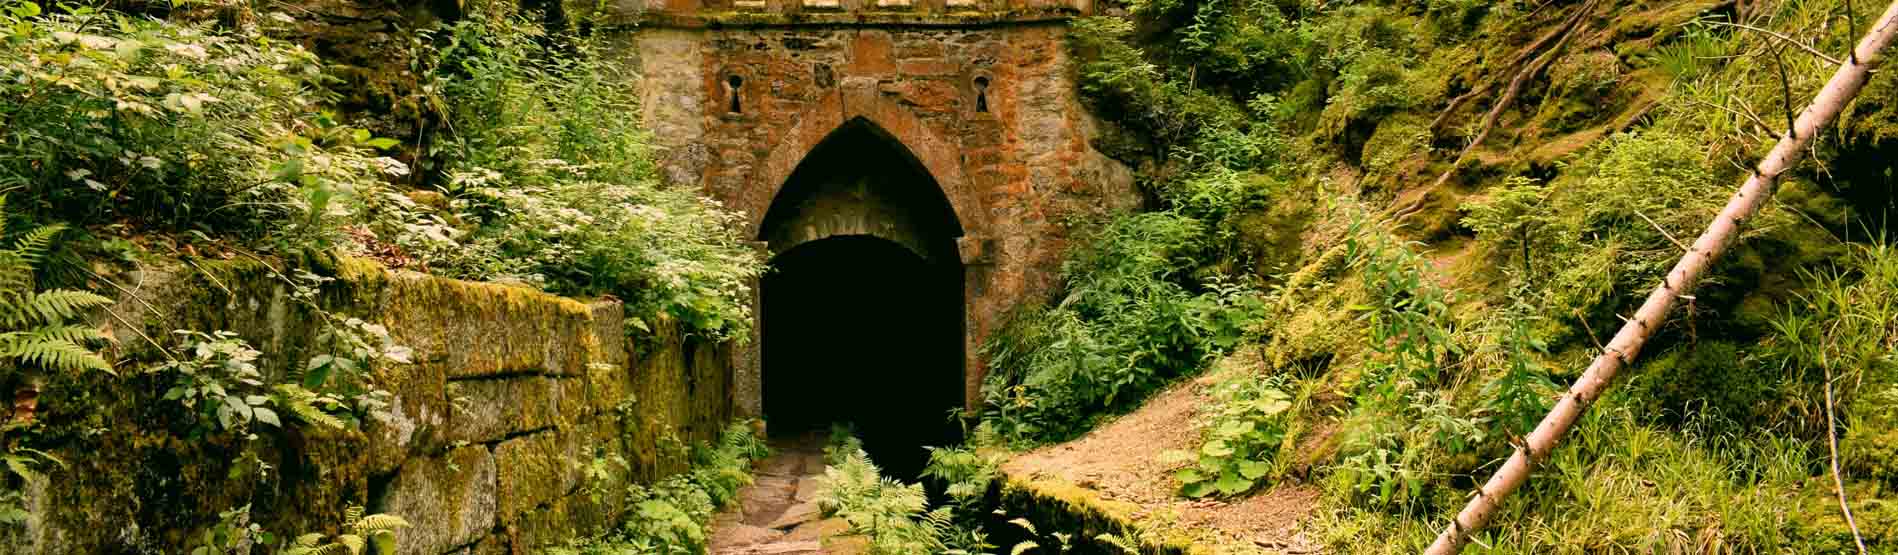 Tunnel under a bridge